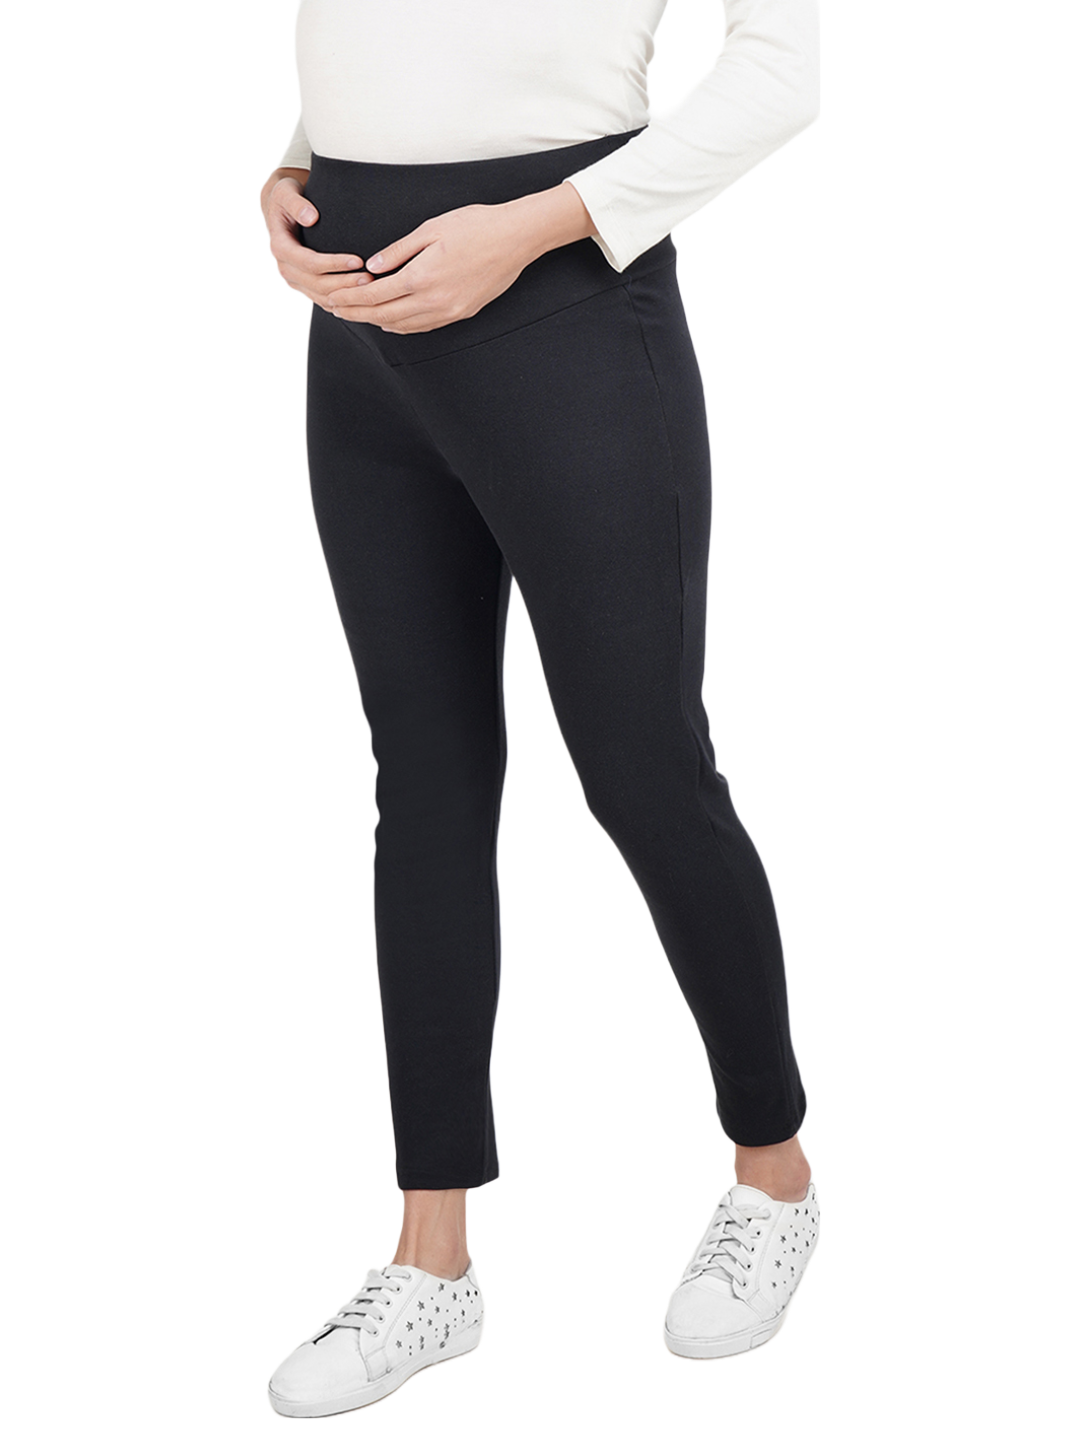 Maternity Pants/Leggings for Pregnant Women